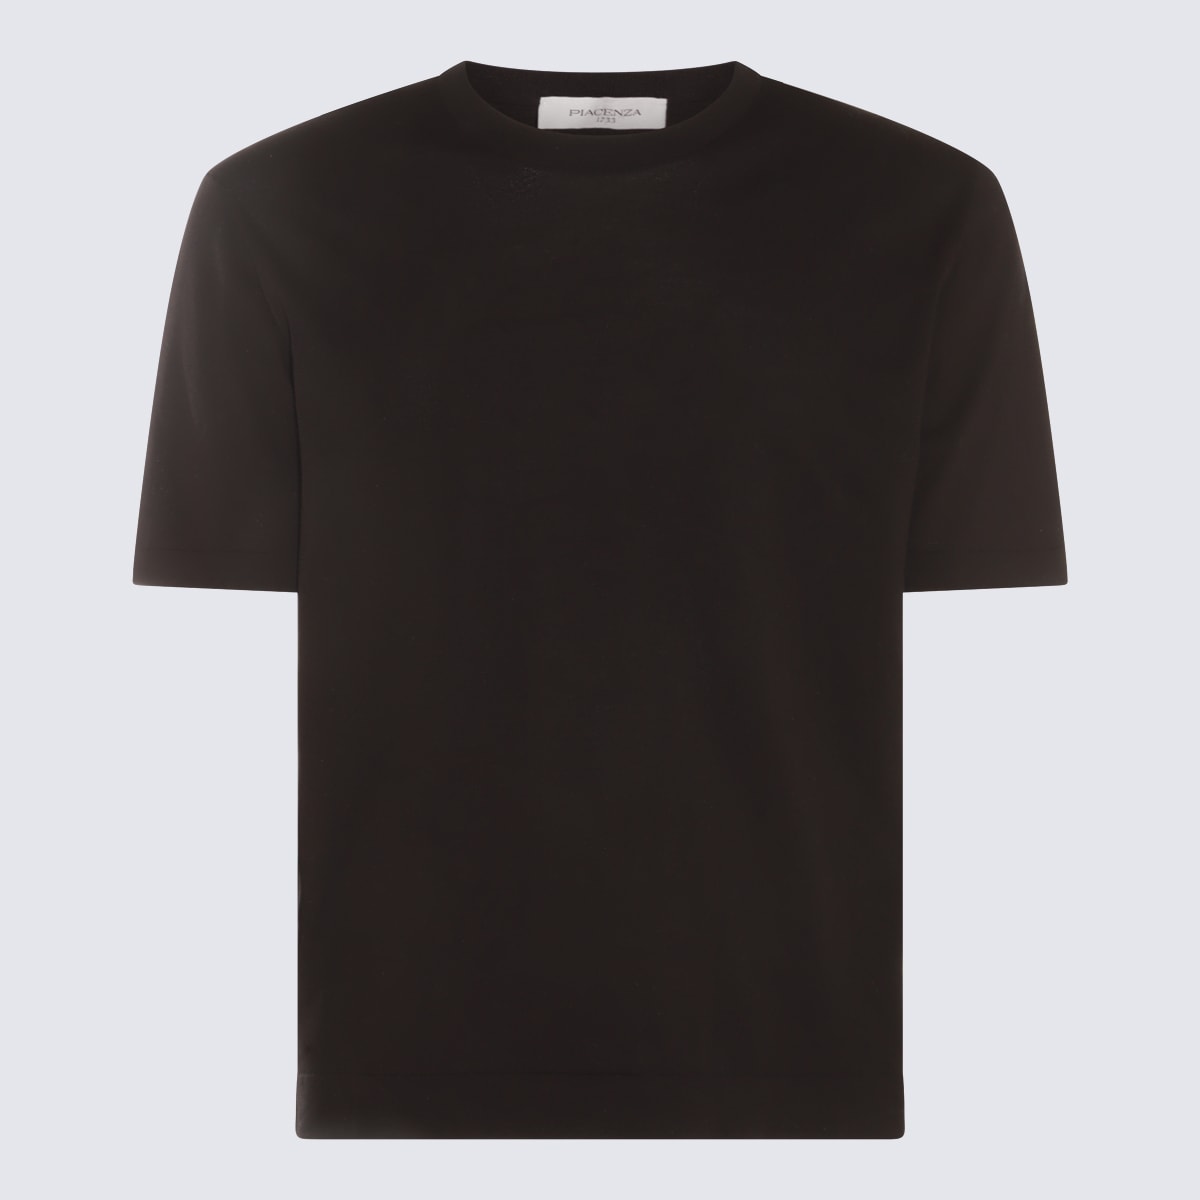 Shop Piacenza Cashmere Black Cotton T-shirt